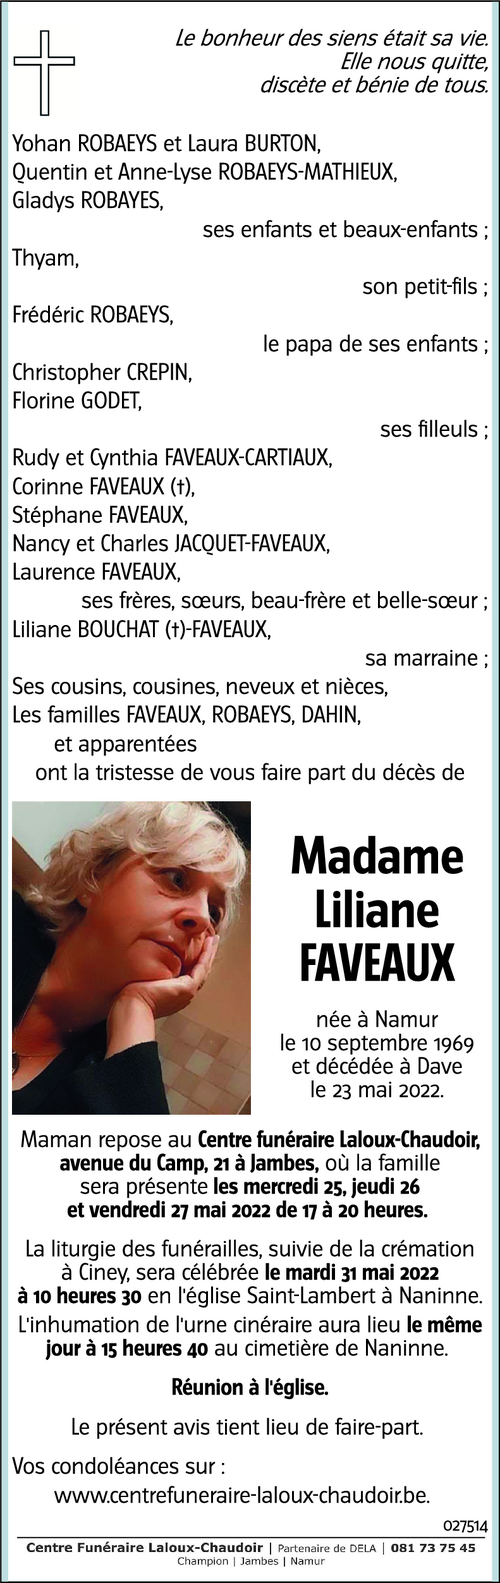 Liliane FAVEAUX